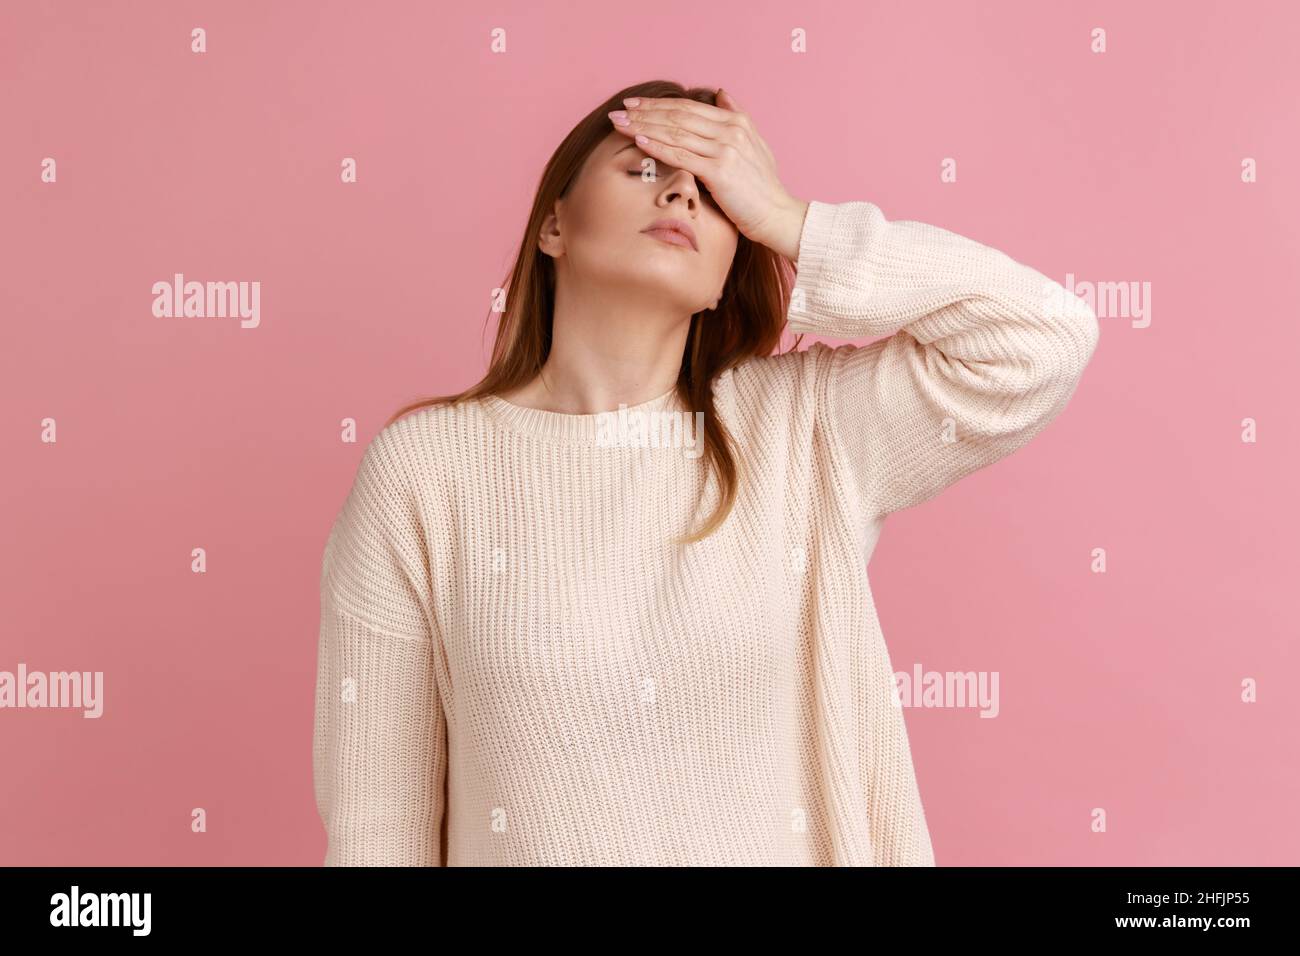 Porträt einer enttäuschten, frustrierten, blonden Frau, die eine Facepalm-Geste macht, schockiert, beschämt über Verlieren, Versagen, trägt einen weißen Pullover. Innenaufnahme des Studios isoliert auf rosa Hintergrund. Stockfoto